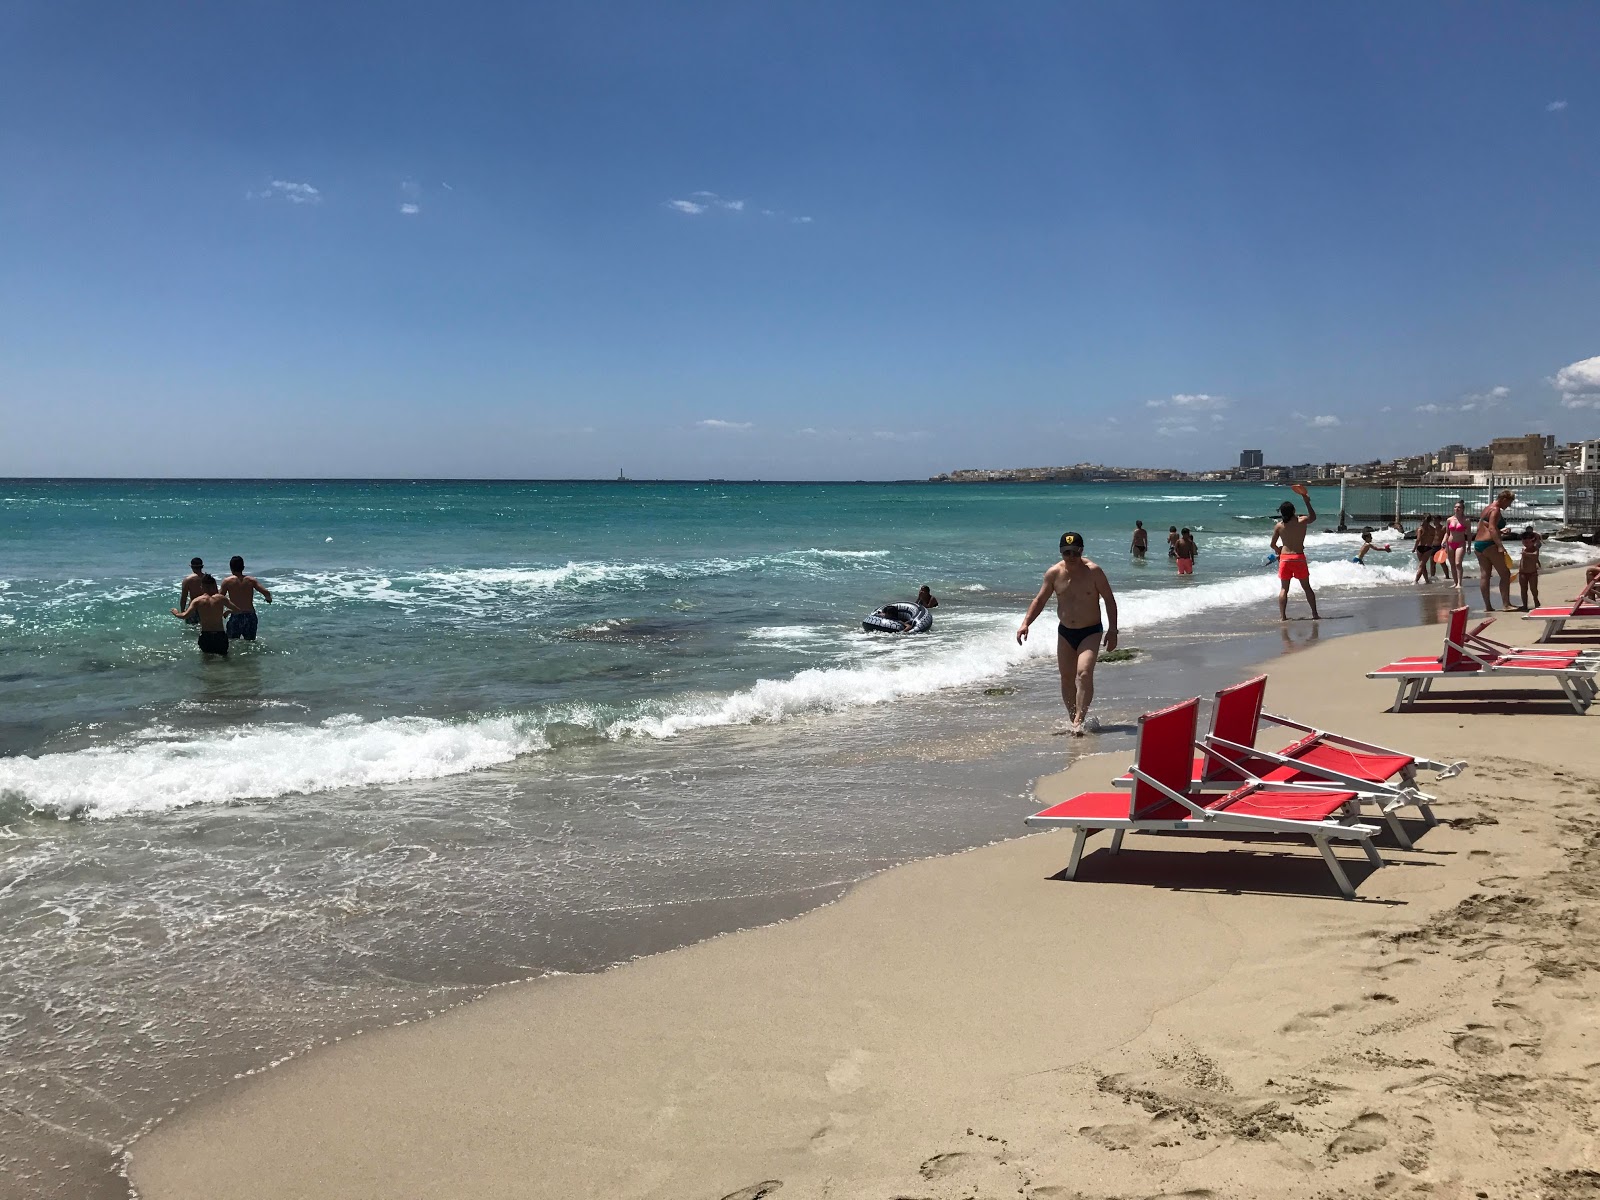 Foto von Spiaggia Gallipoli - beliebter Ort unter Entspannungskennern